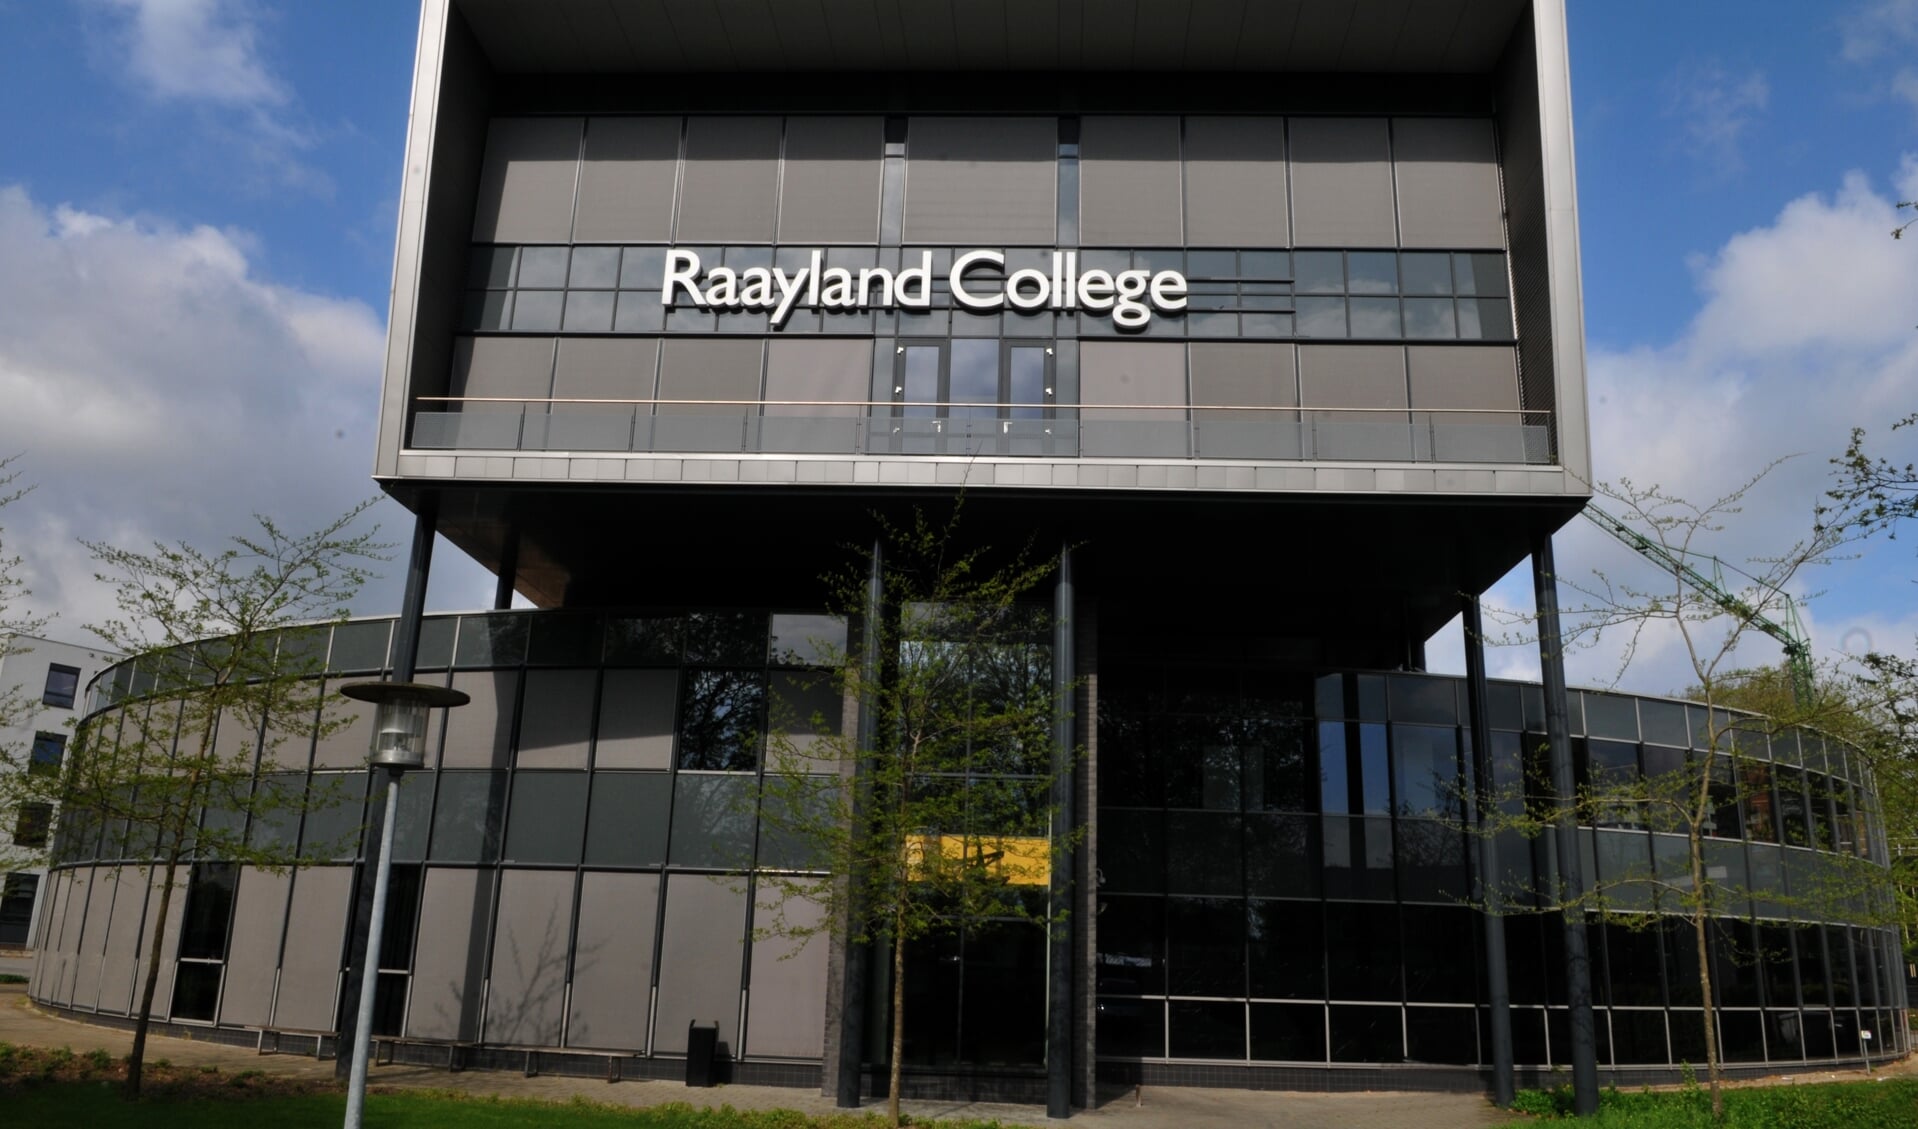 Woensdag wordt het Raayland College als stemlocatie  ingezet.